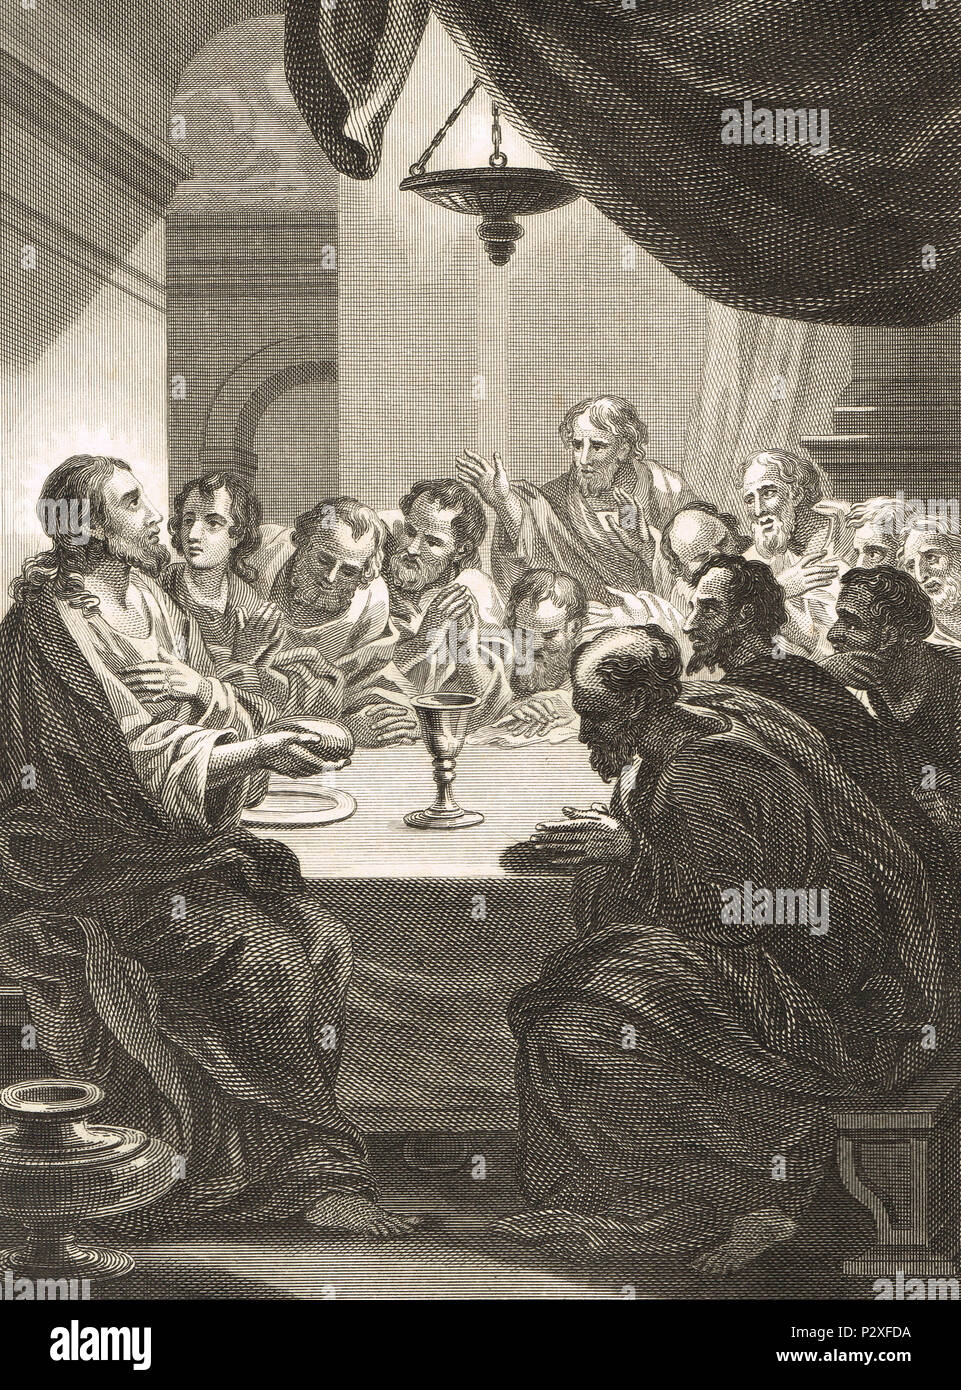 La dernière Cène. Le dernier repas de Jésus avec ses apôtres, à Jérusalem avant sa crucifixion Banque D'Images